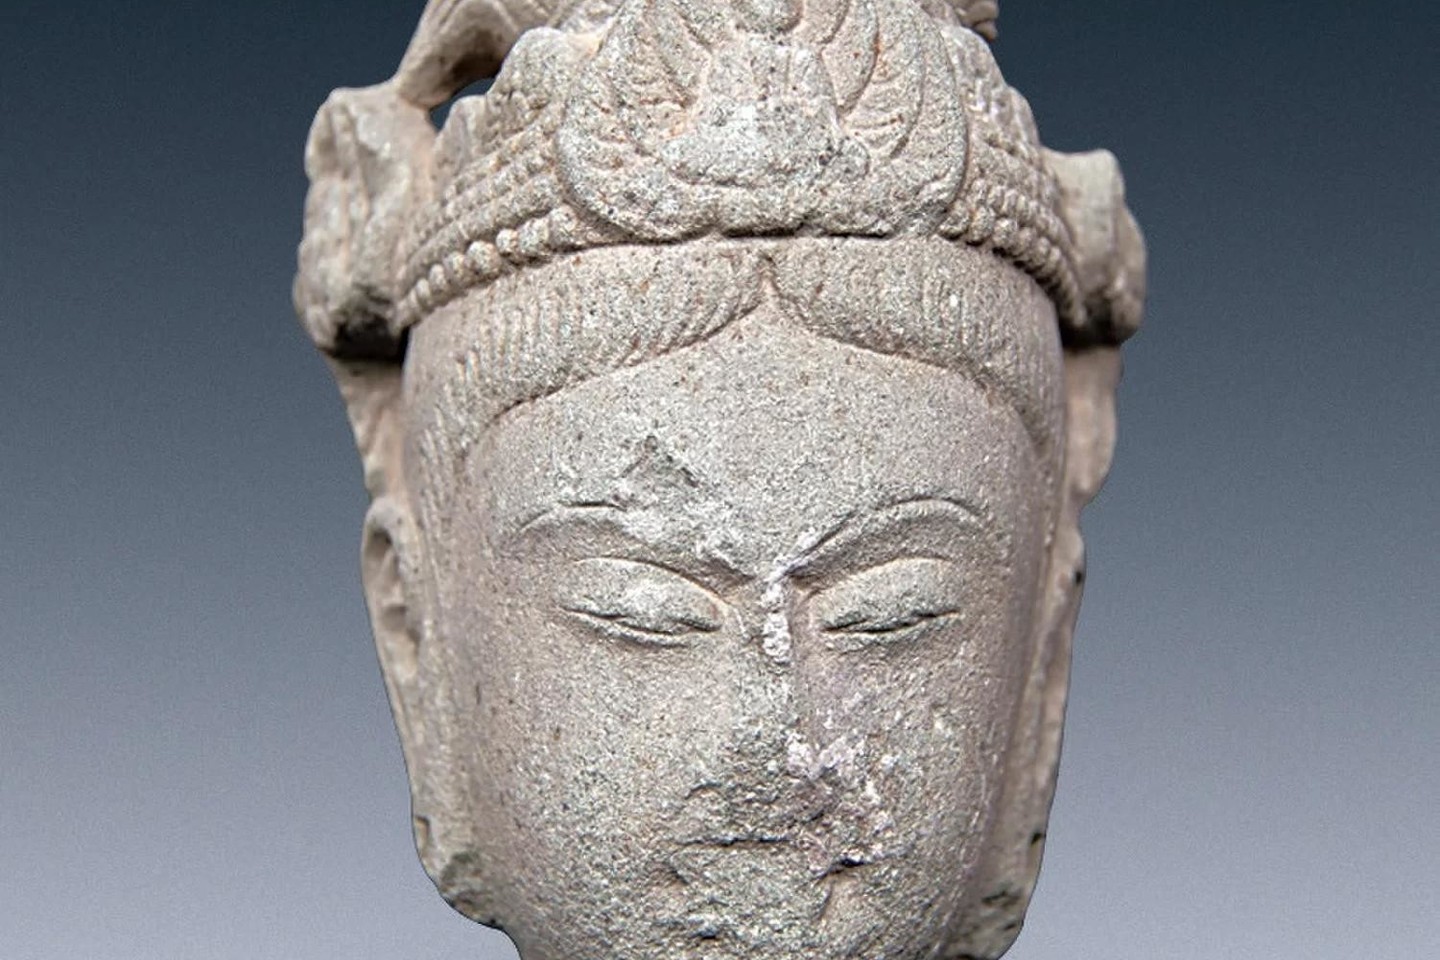  Šalia palaikų rastos statulos buvo sukurtos kažkada tarp Wei (386-534) ir Song (960-1276) dinastijų.<br> „Chinese Cultural Relics“ nuotr.